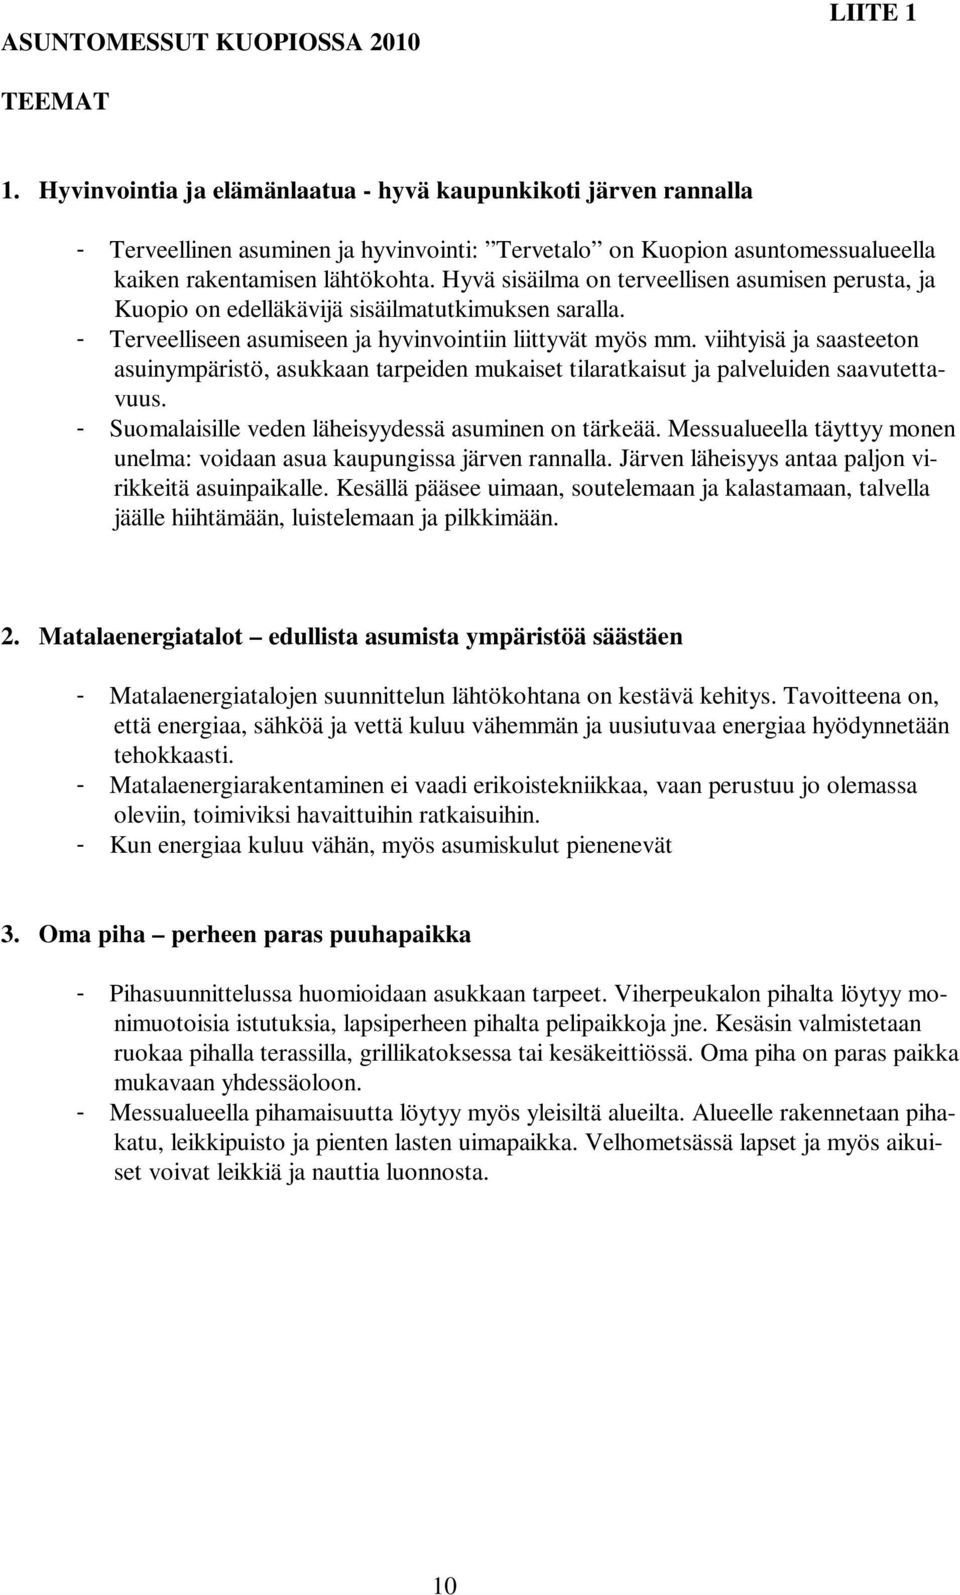 Hyvä sisäilma on terveellisen asumisen perusta, ja Kuopio on edelläkävijä sisäilmatutkimuksen saralla. - Terveelliseen asumiseen ja hyvinvointiin liittyvät myös mm.